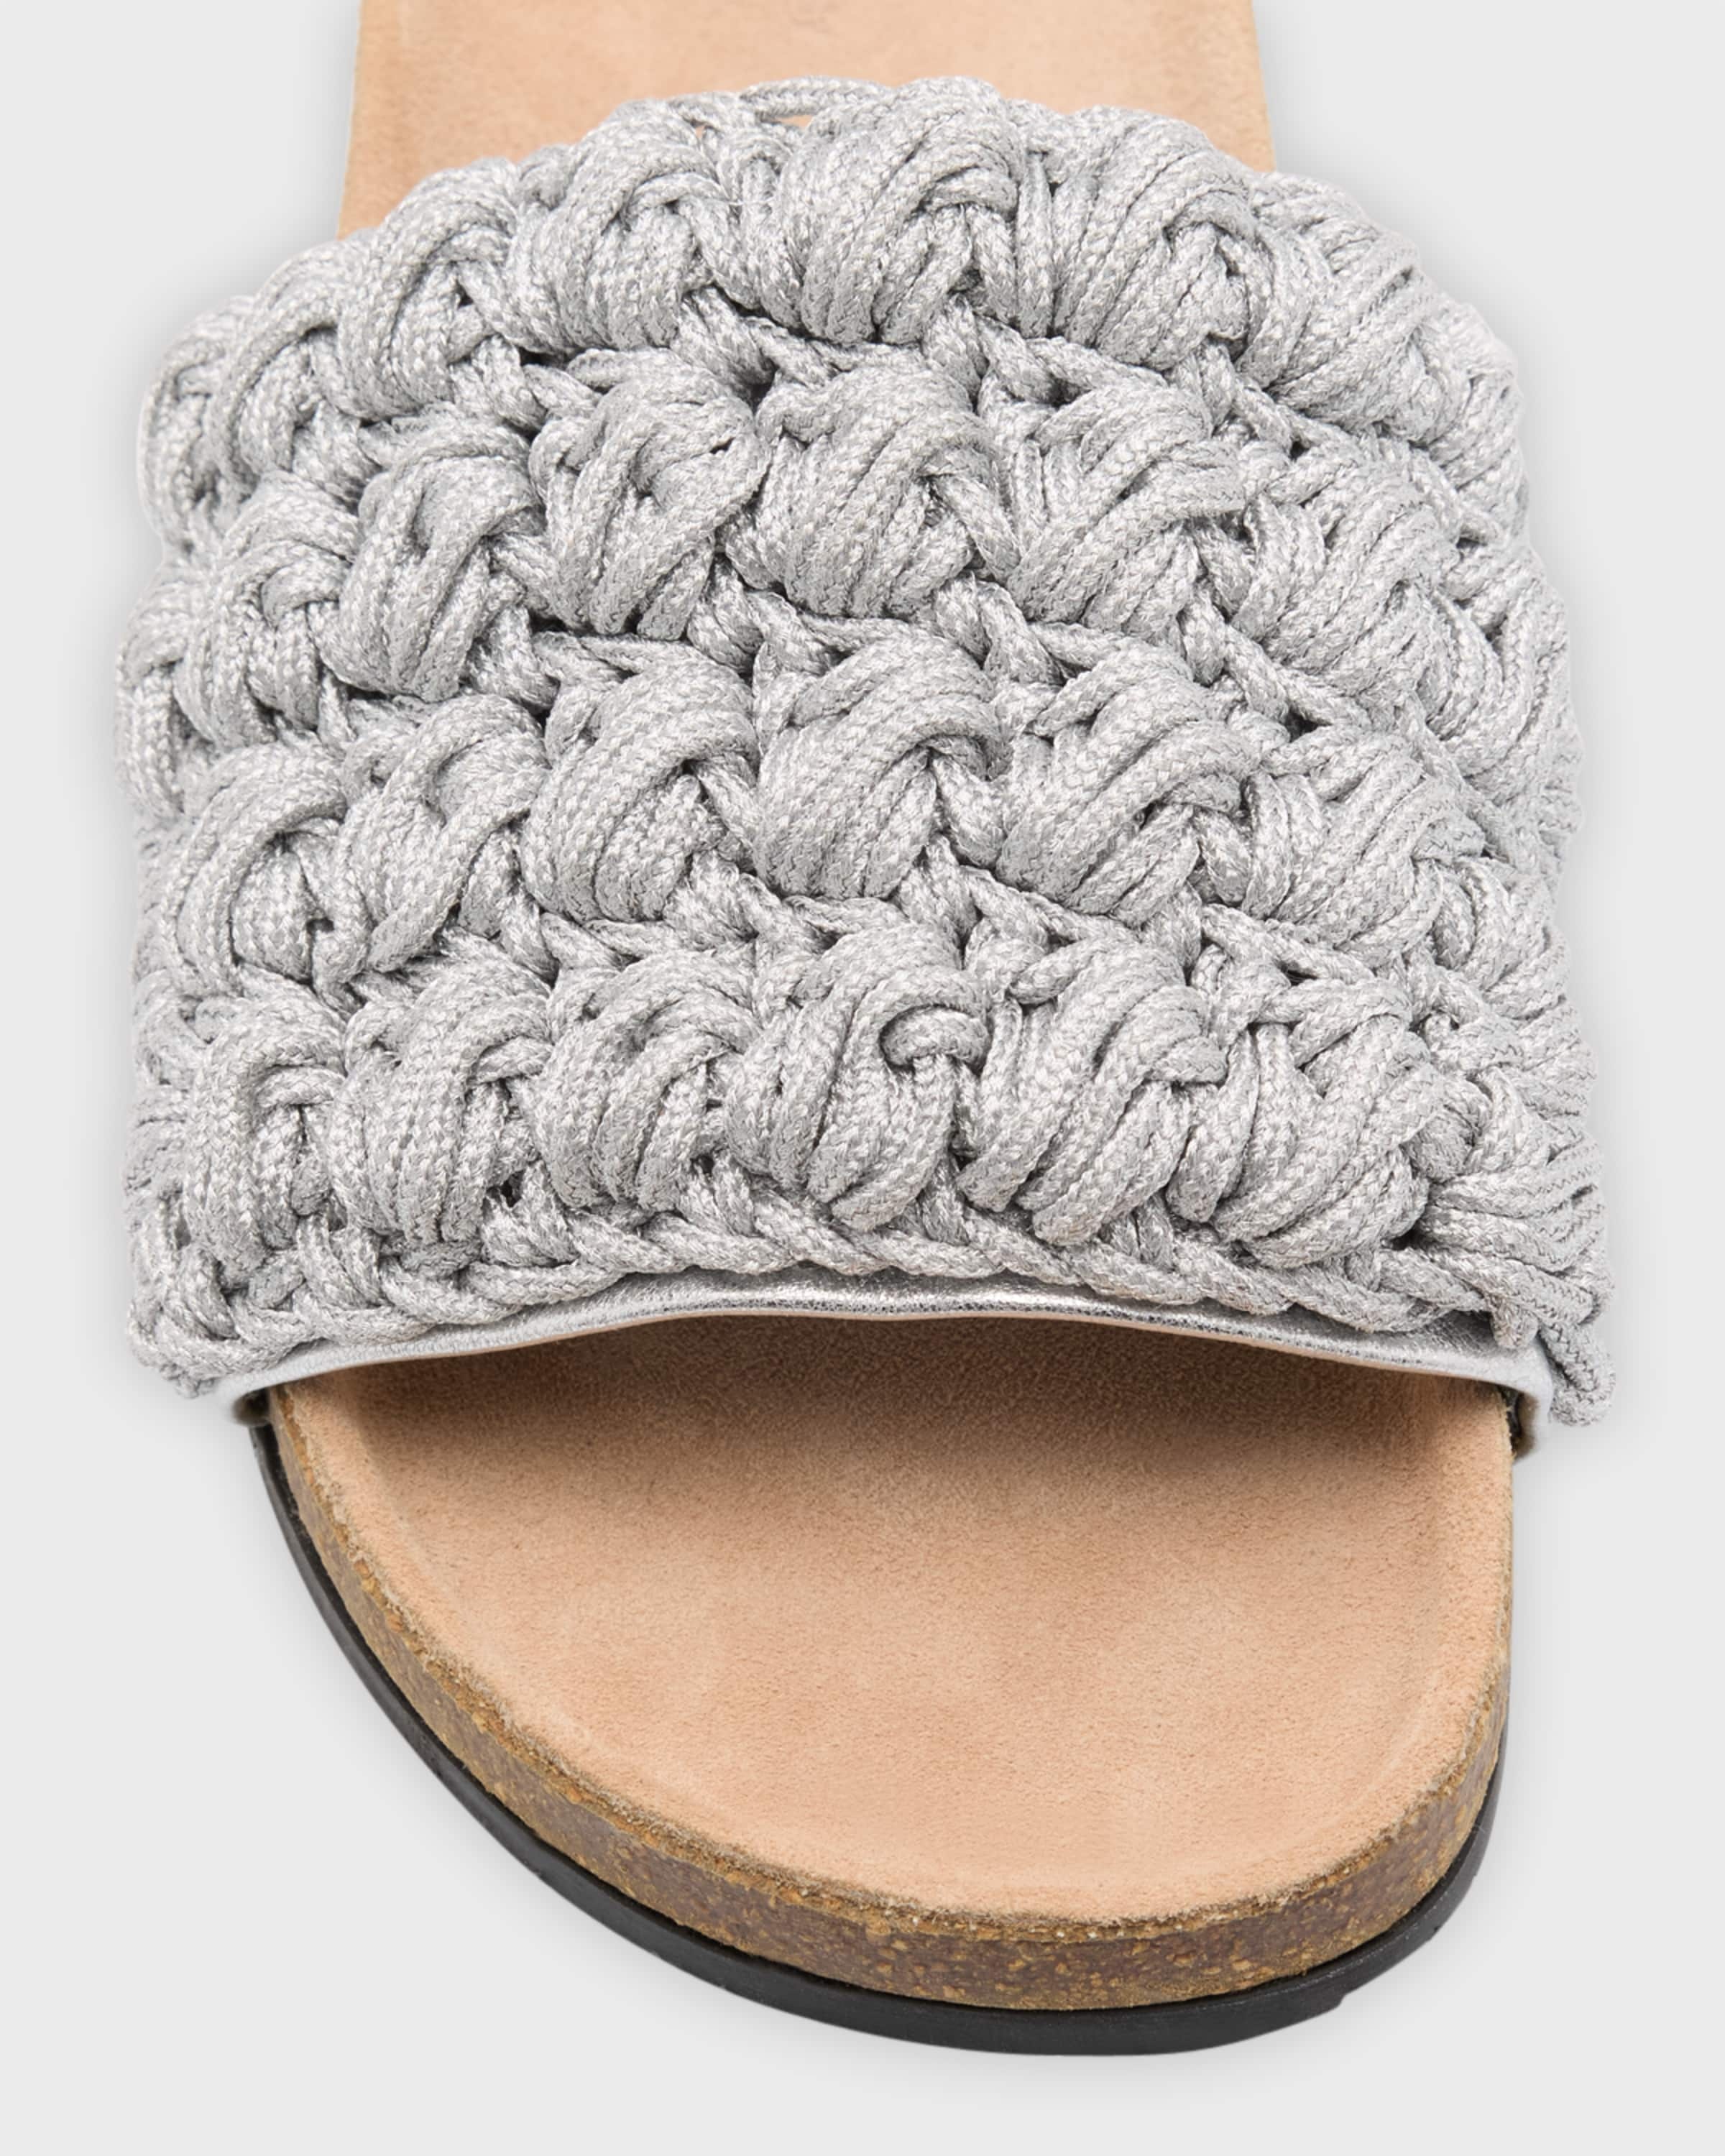 Crochet Cotton Easy Slide Sandals - 3